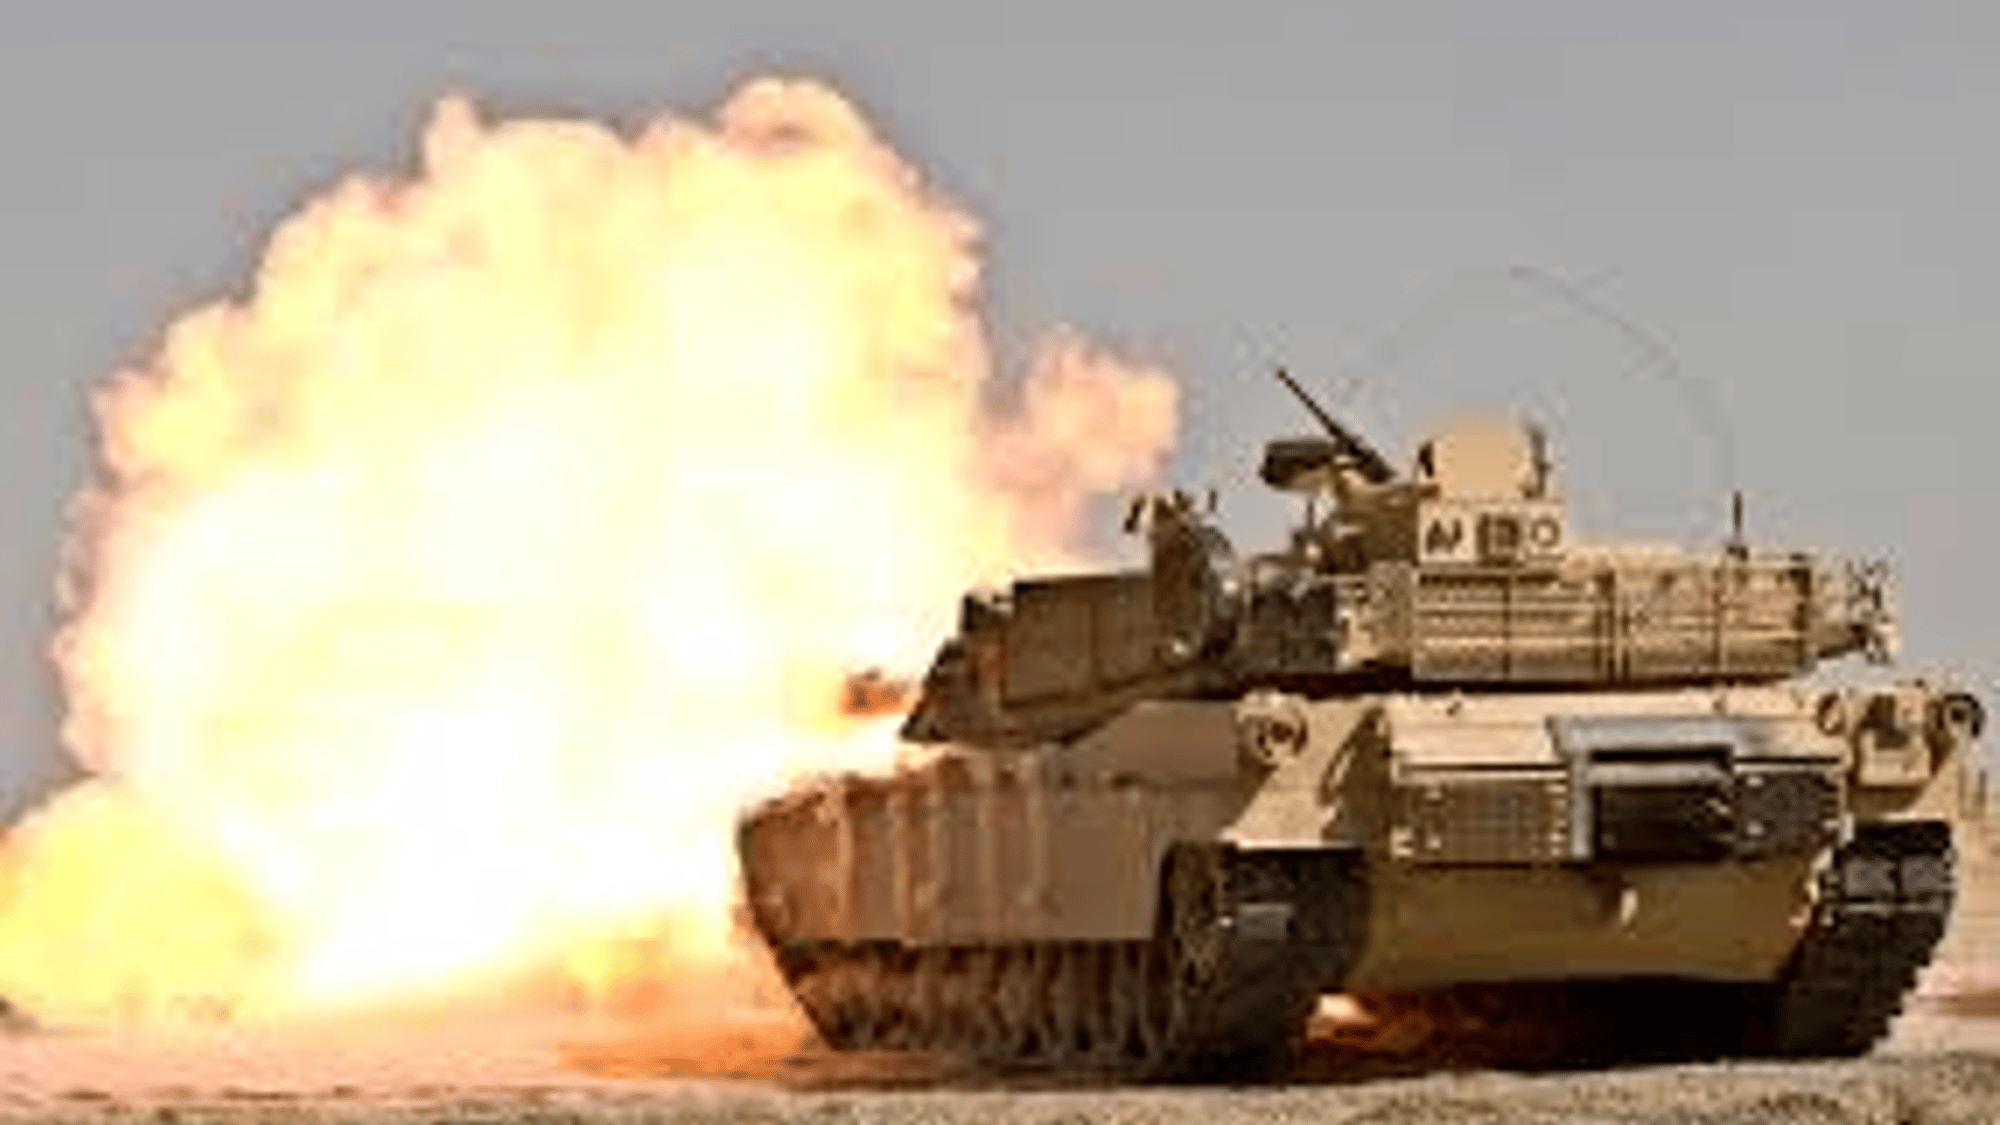 M1A1 - Abrams